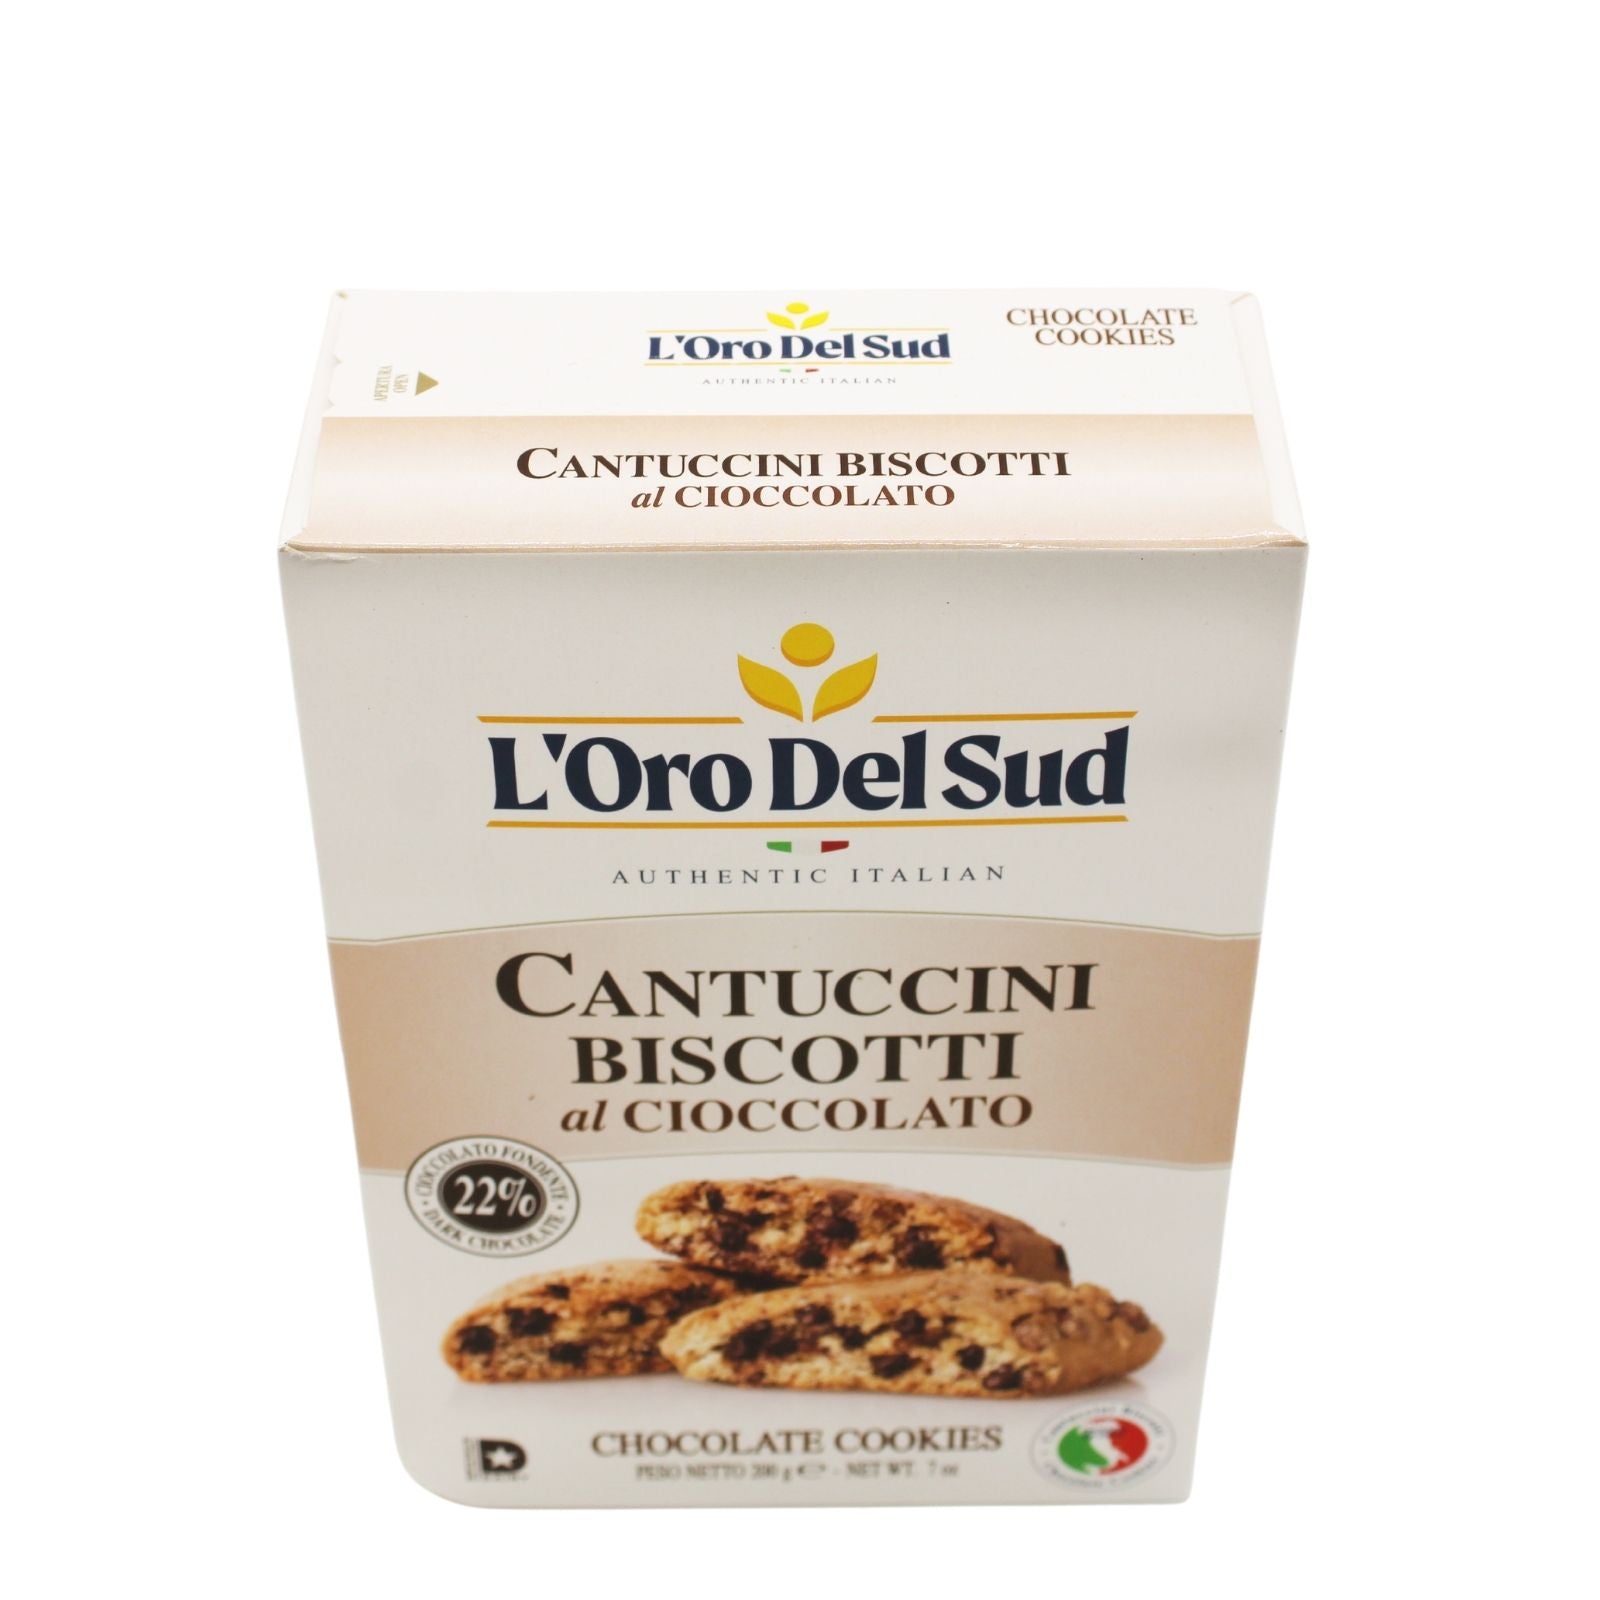 L'Oro Del Sud Cantuccini Biscotti with Chocolate